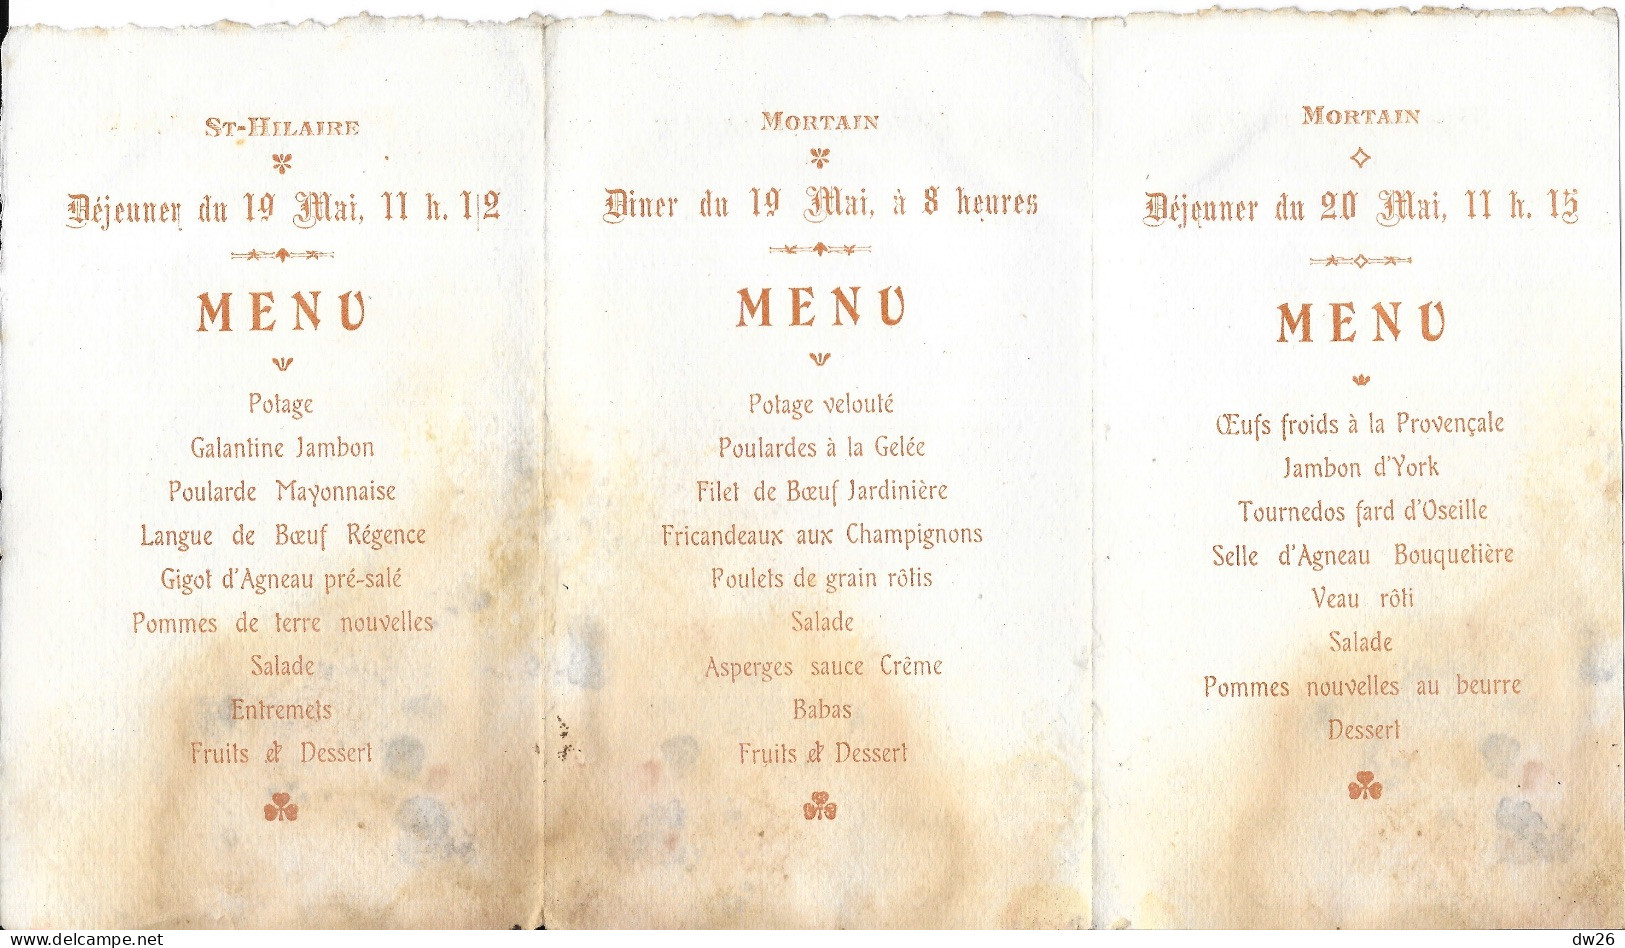 Membre Société Historique & Archéologique Saint-Malo - Excursion Dans Le Mortainais (Manche) Mai 1907 - Cartes De Membre